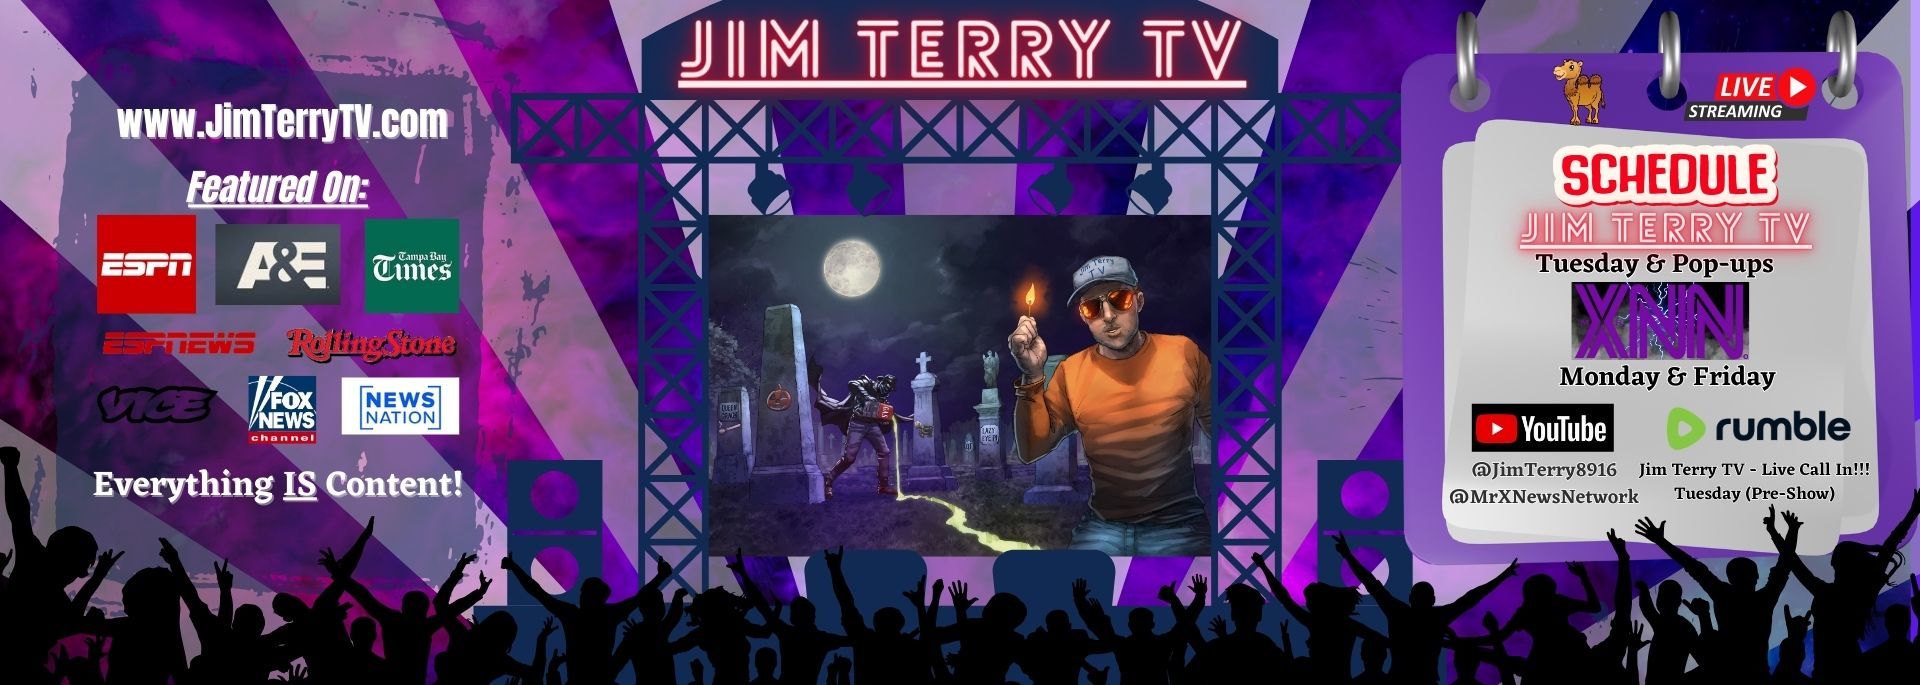 Jim Terry TV